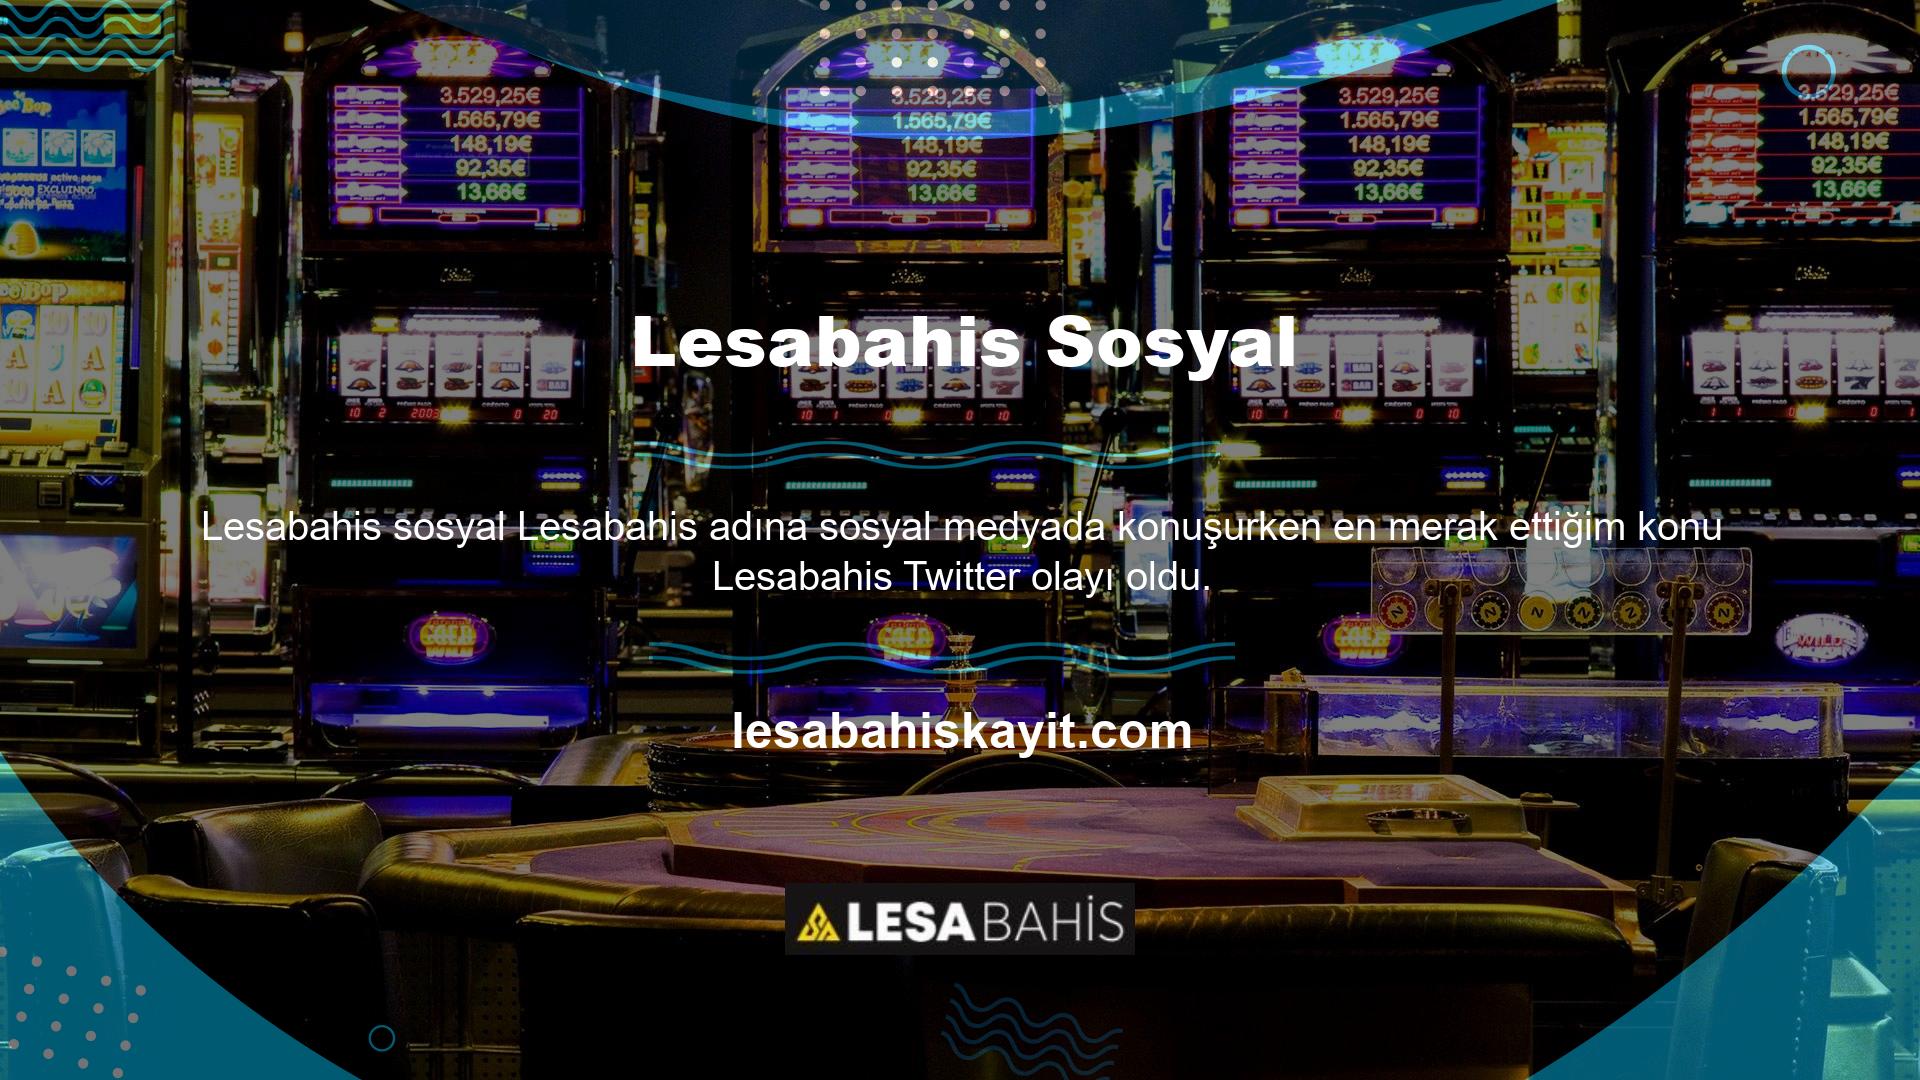 Lesabahis bahis sitesinin sosyal medya faaliyetinin web sitesinde açıkça görüntülendiğini daha önce belirtmiştik